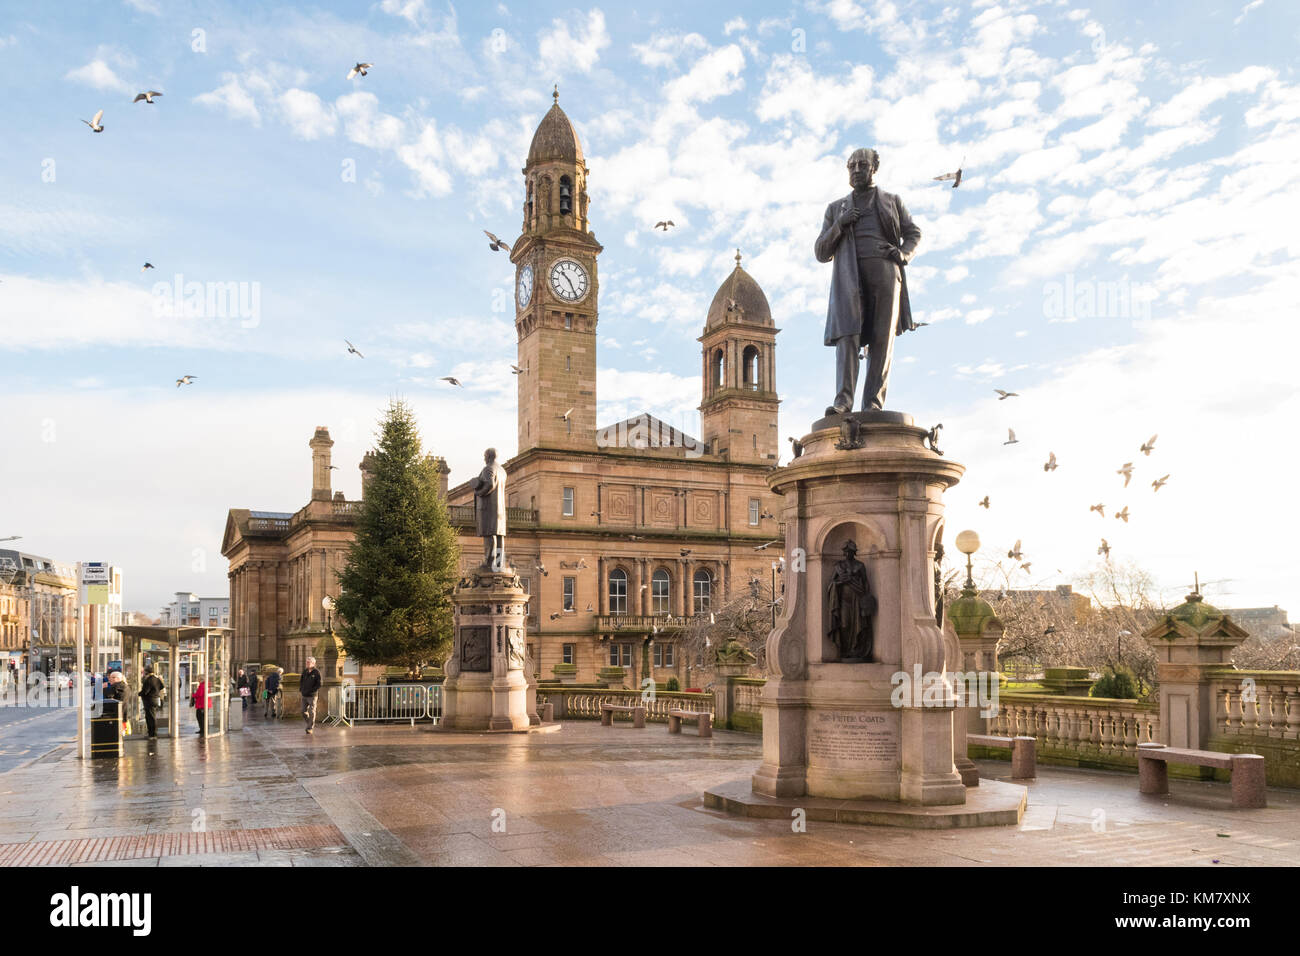 Paisley centre-ville, l'hôtel de ville et statue de Sir Peter Coates, Paisley, Scotland Banque D'Images